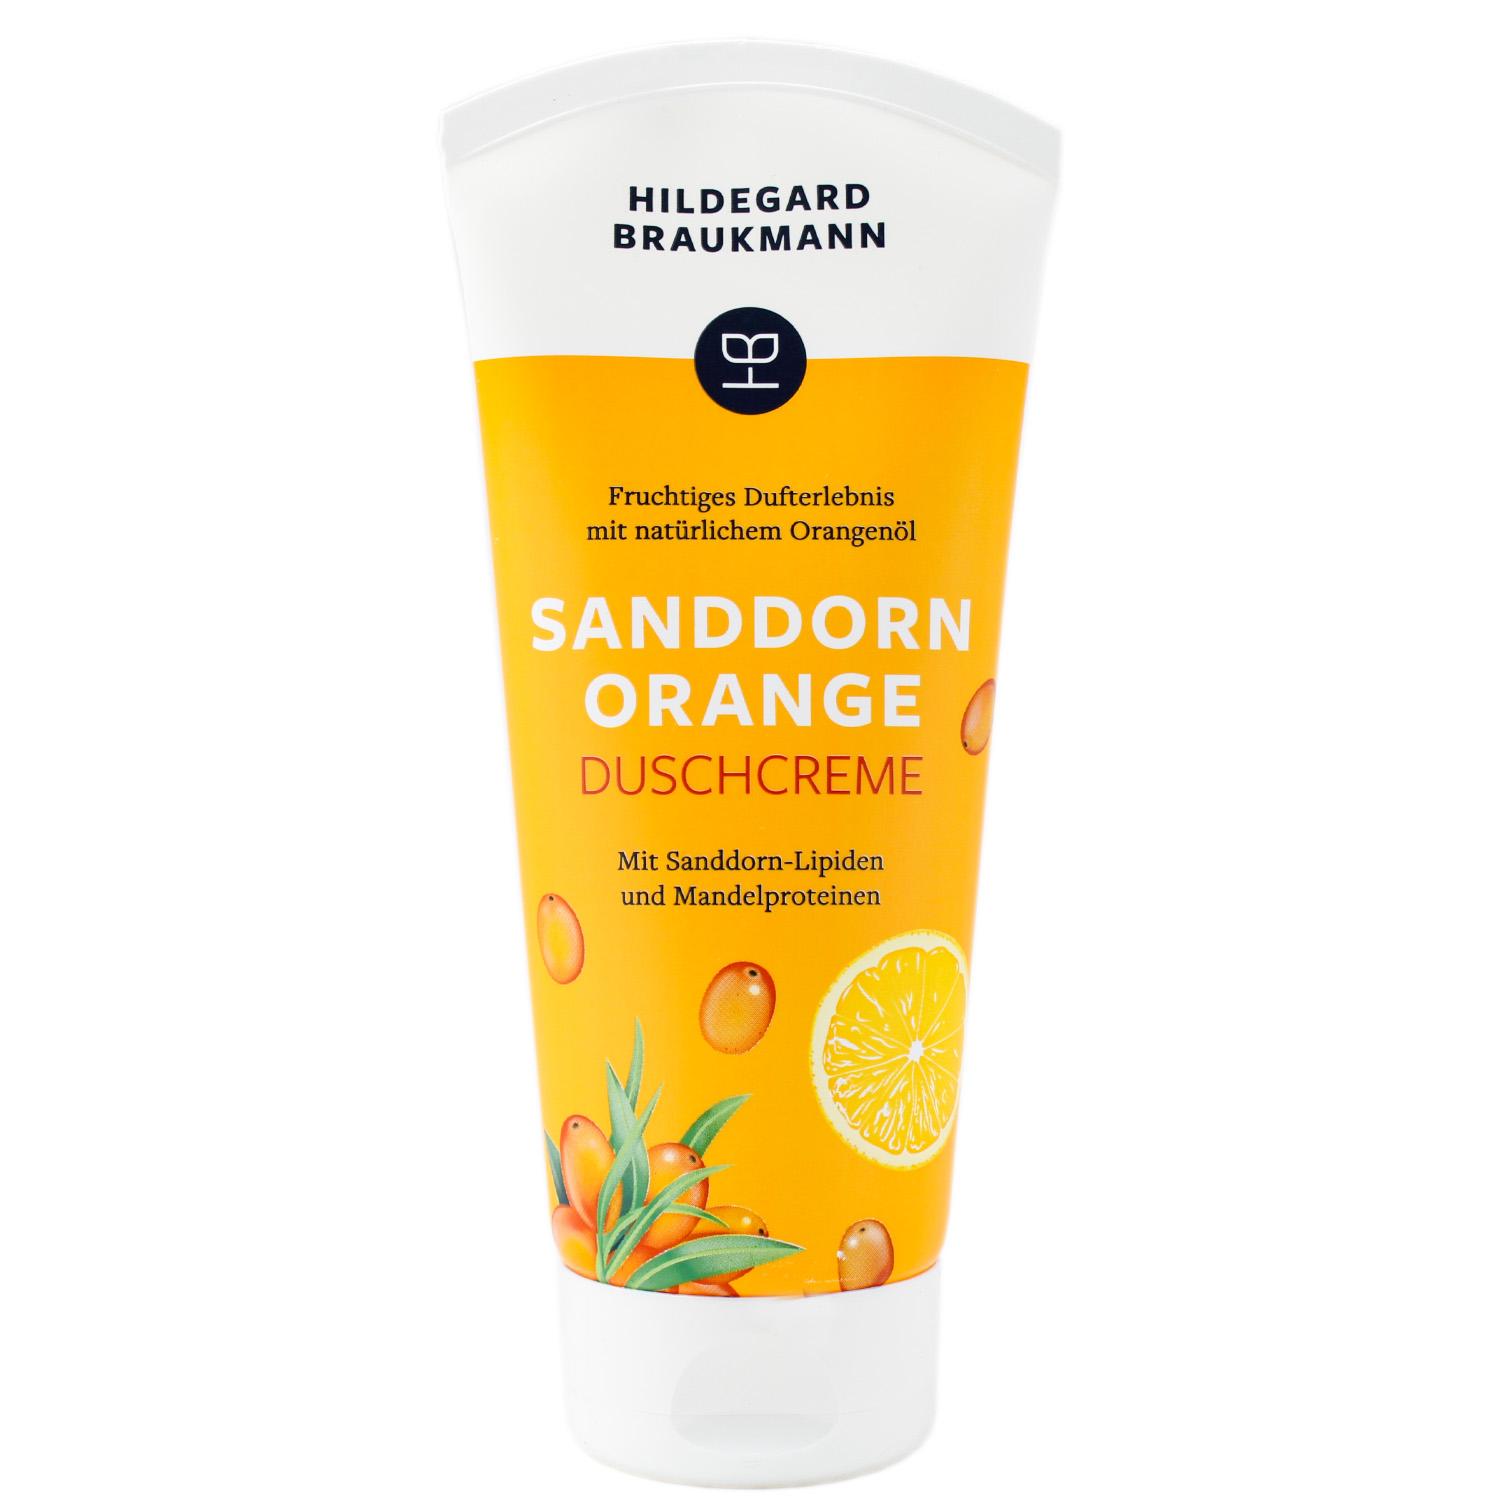 Hildegard Braukmann Sanddorn Orange Duschcreme 200ml